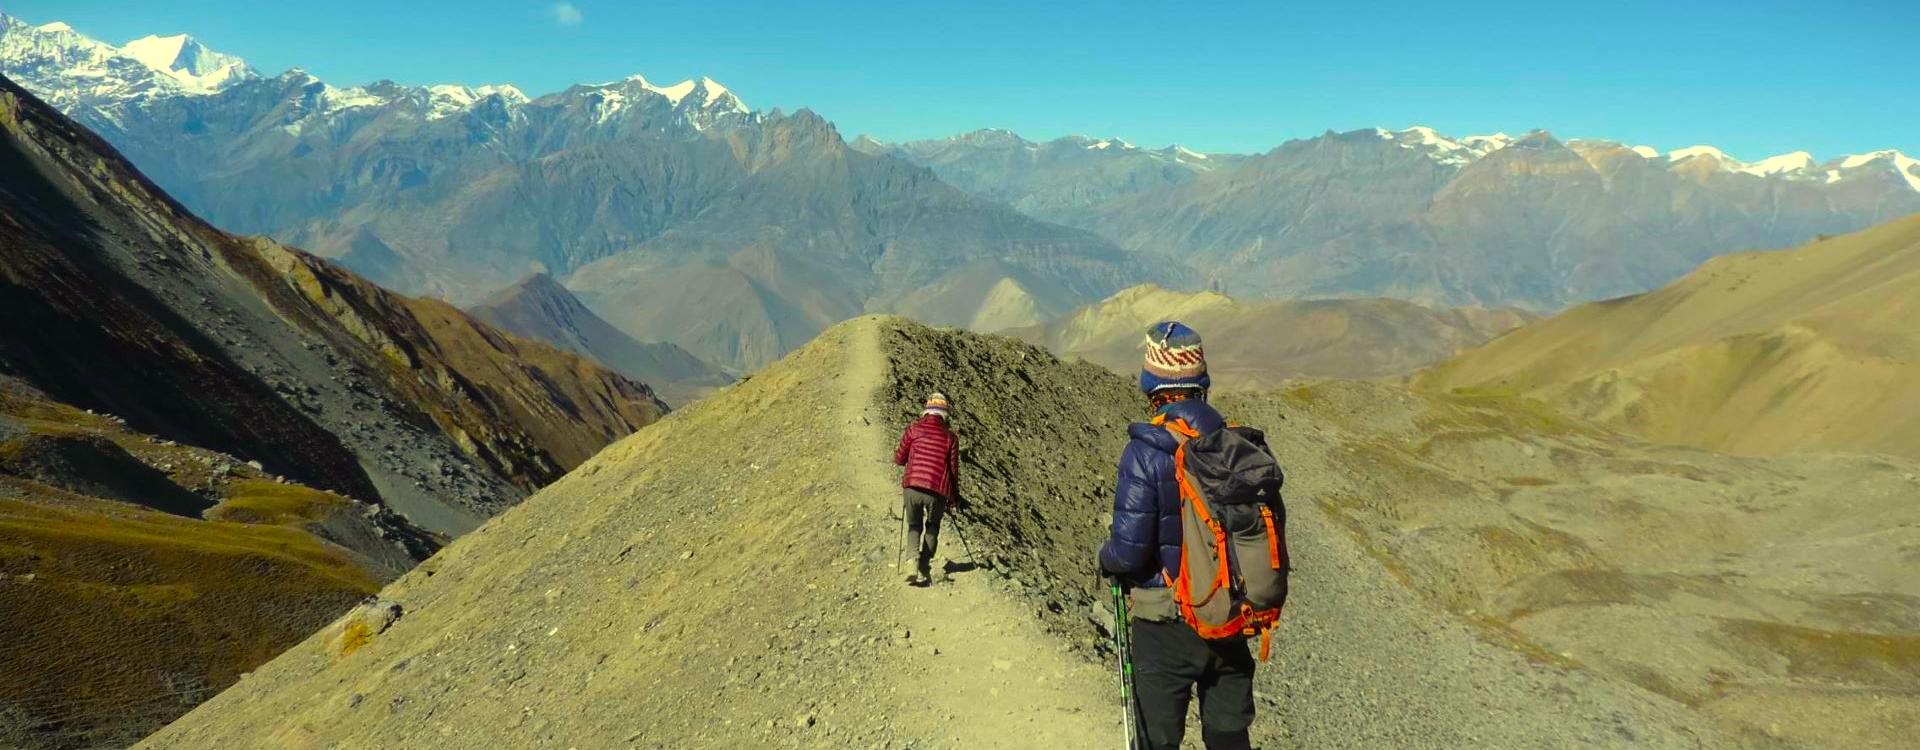 20 Best Treks in Nepal 2023 